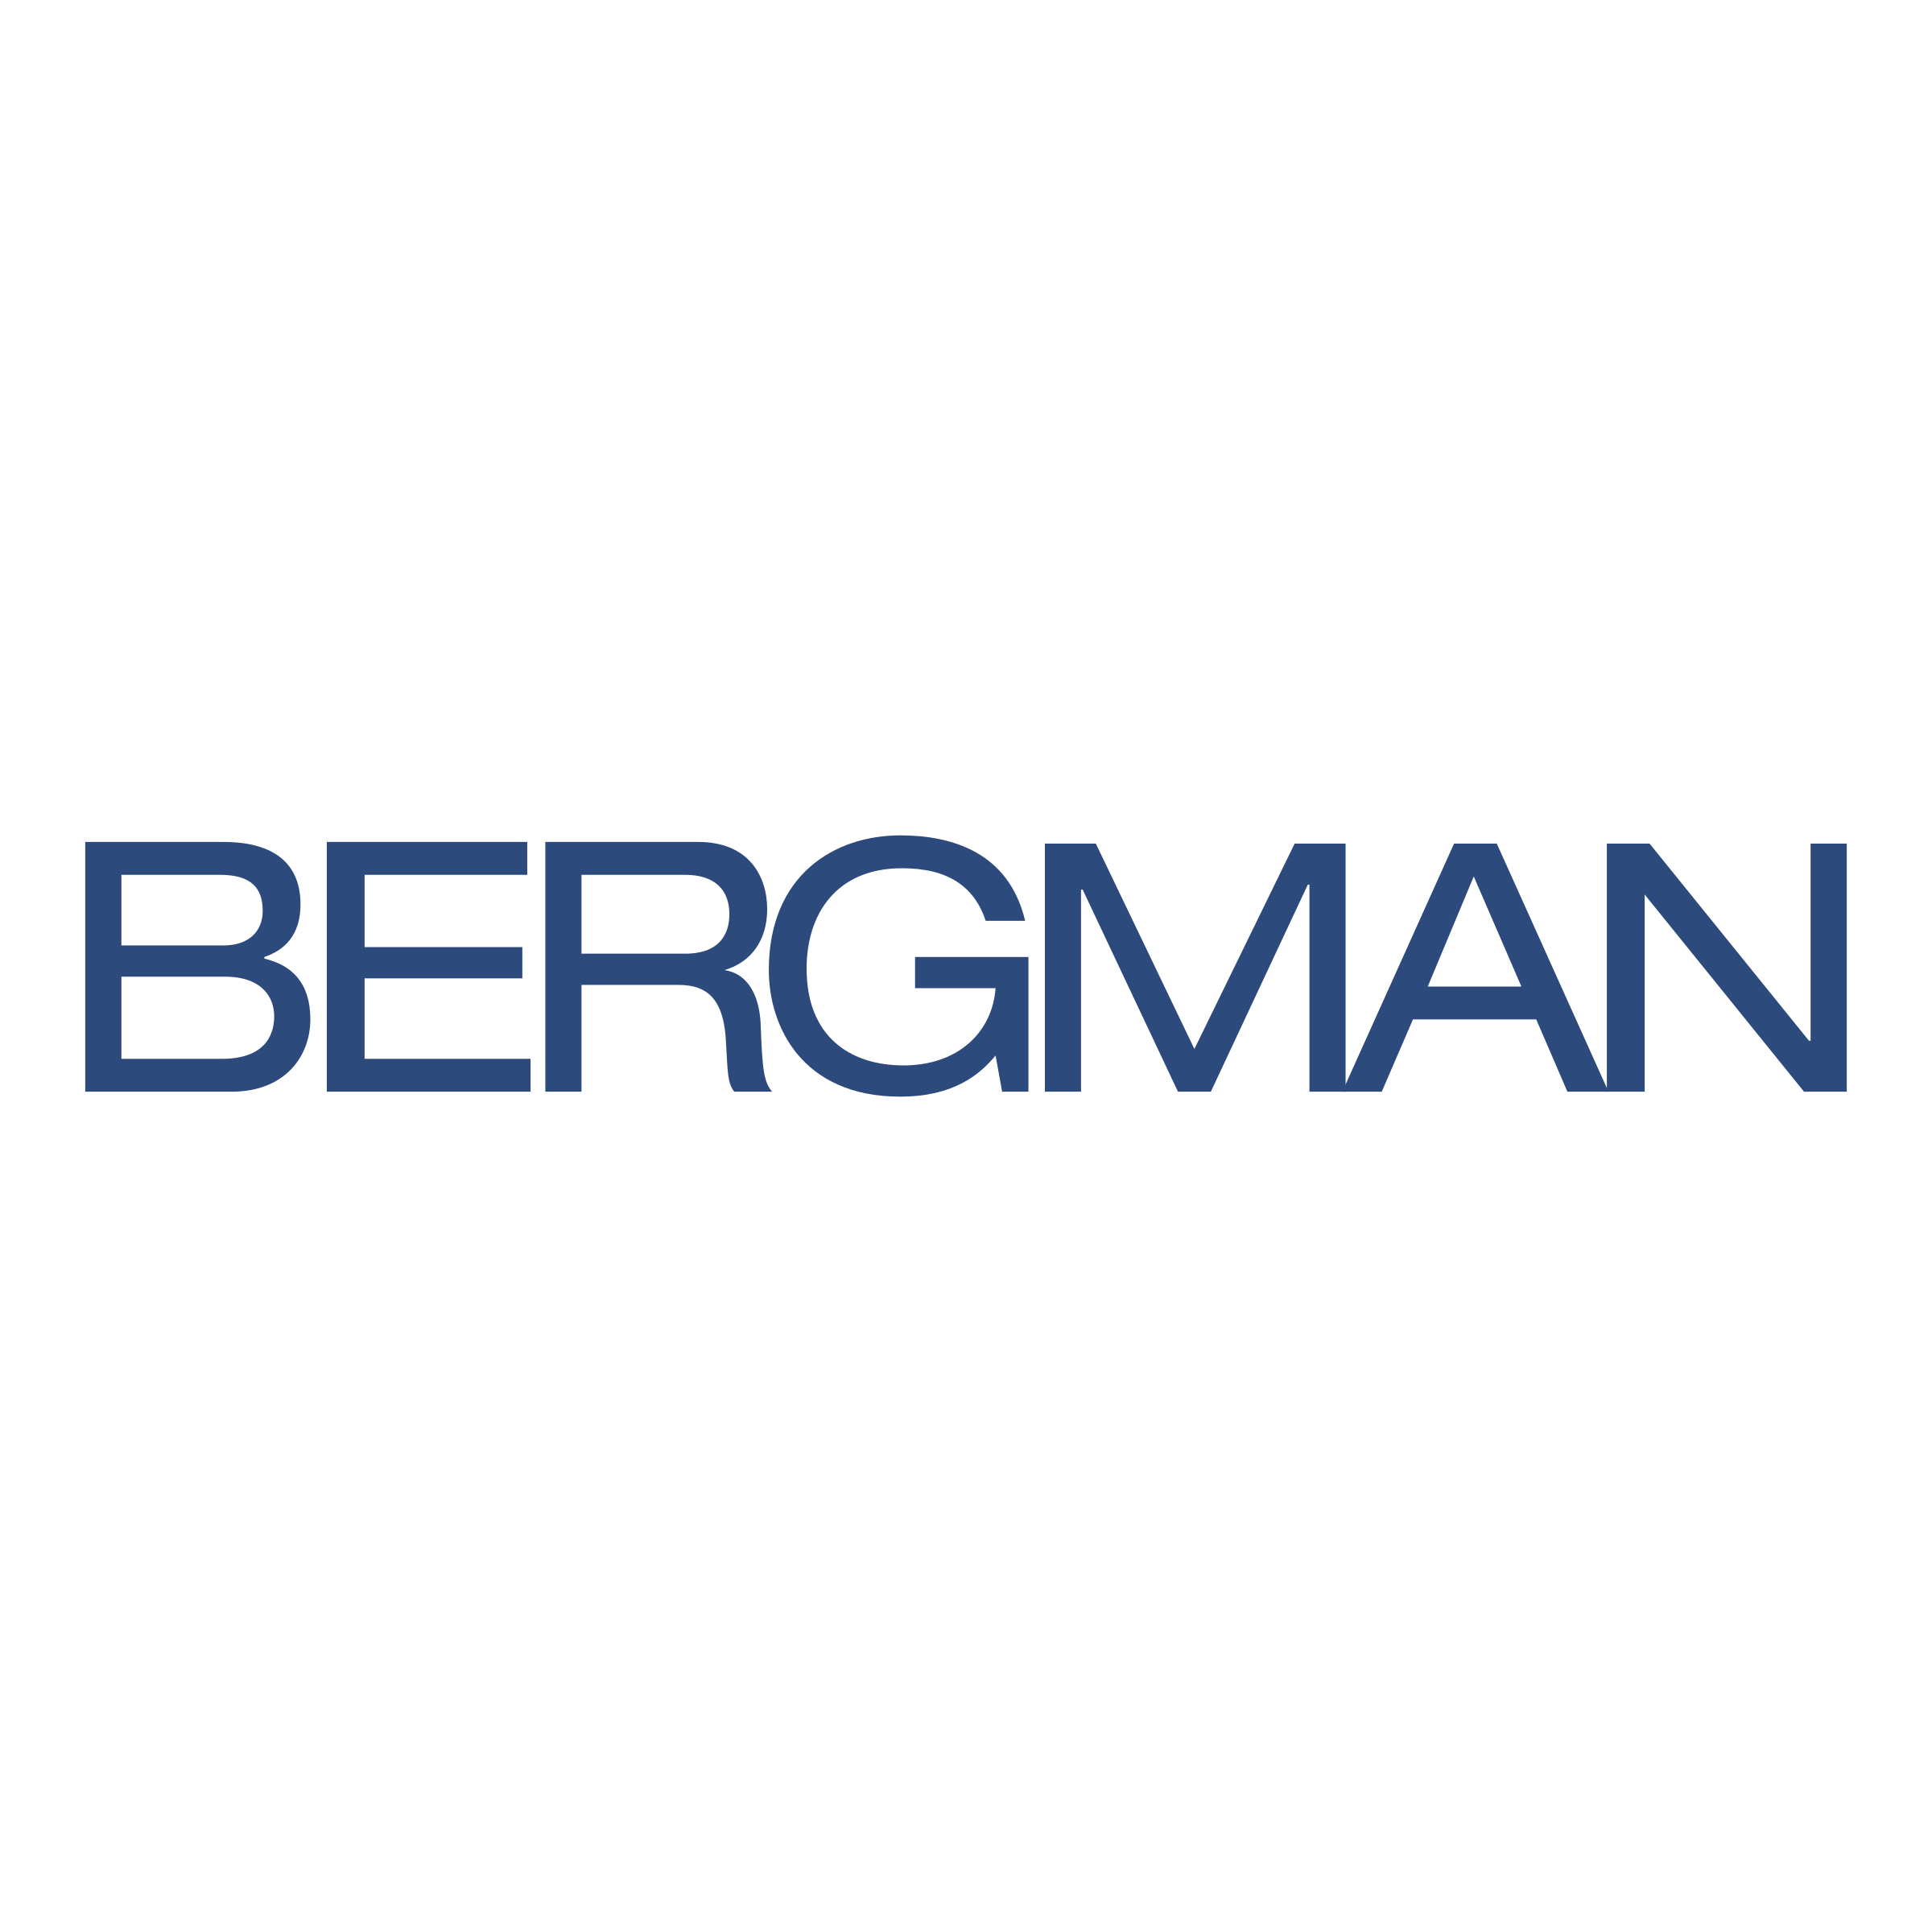 bergman-logo-png-transparent